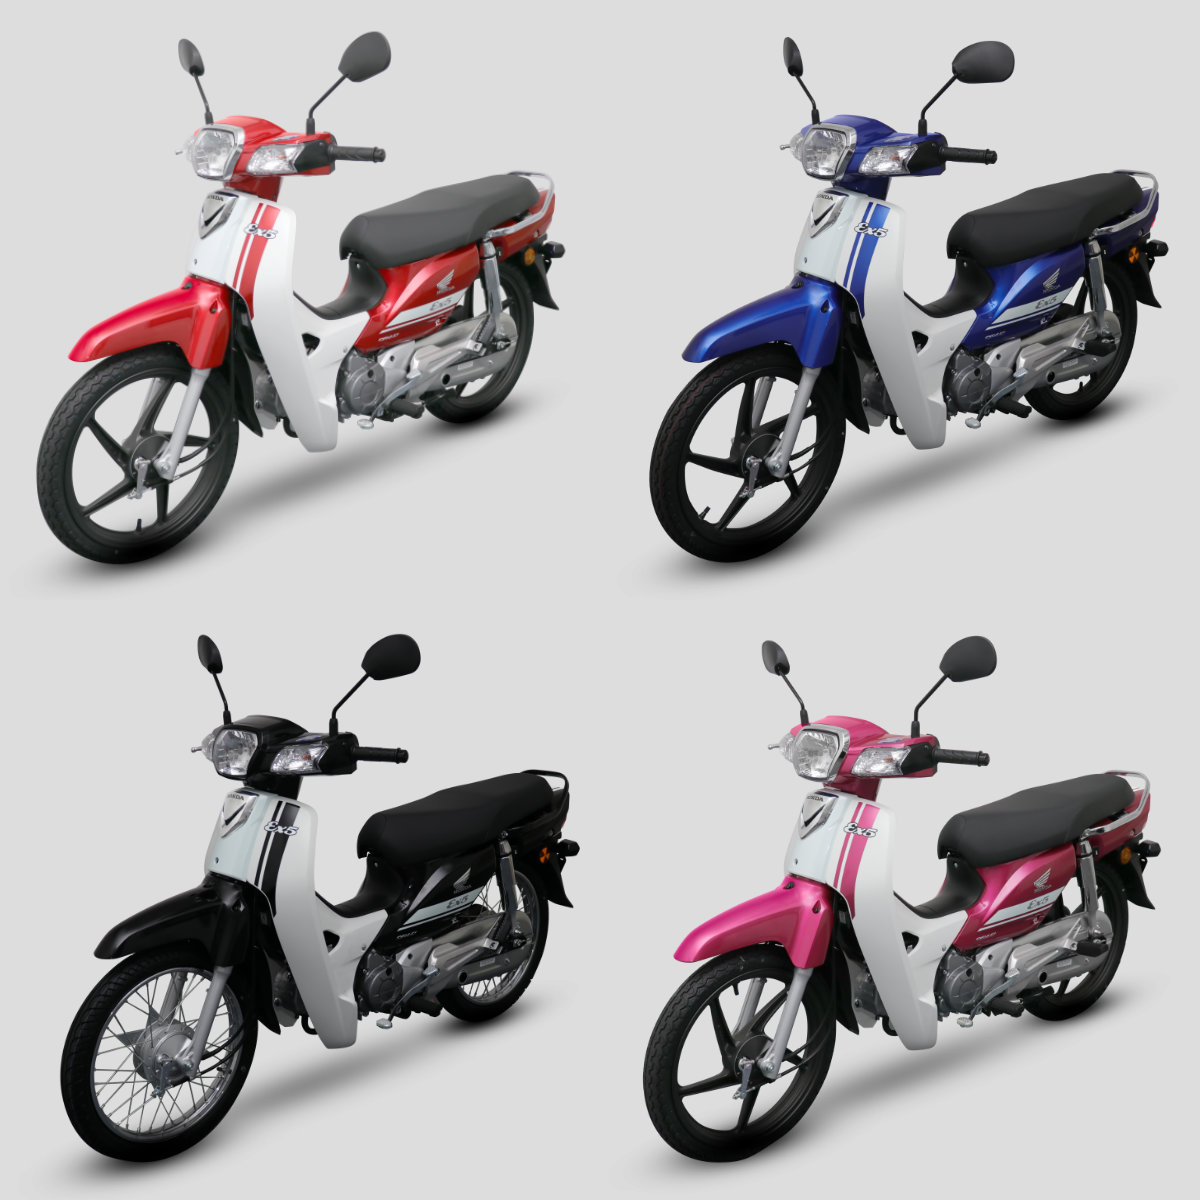 Sáng mai Honda Việt Nam ra mắt xe máy mới liệu có phải Vision